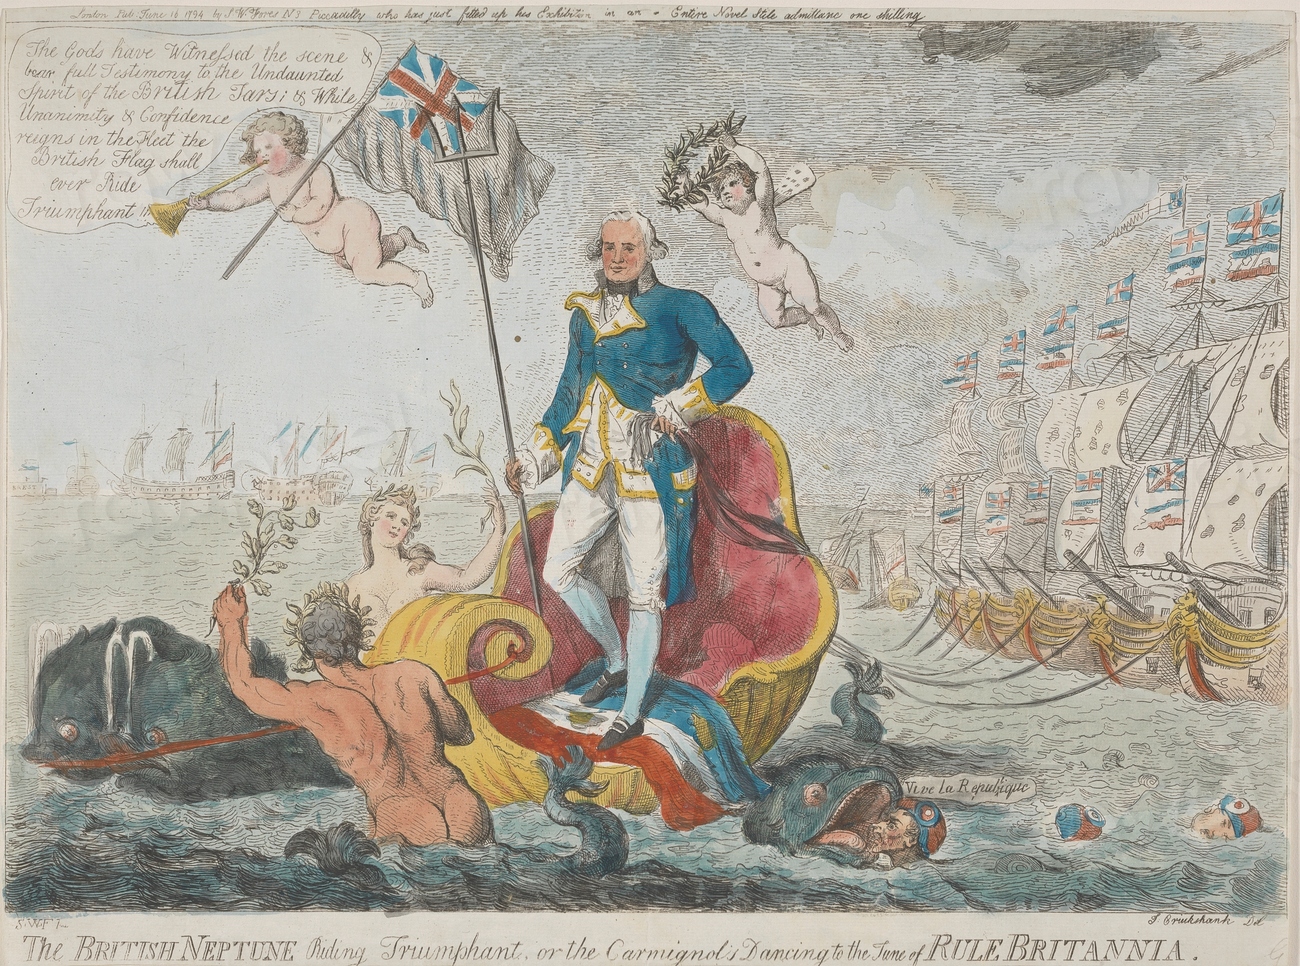 The British Neptune riding Triumphant